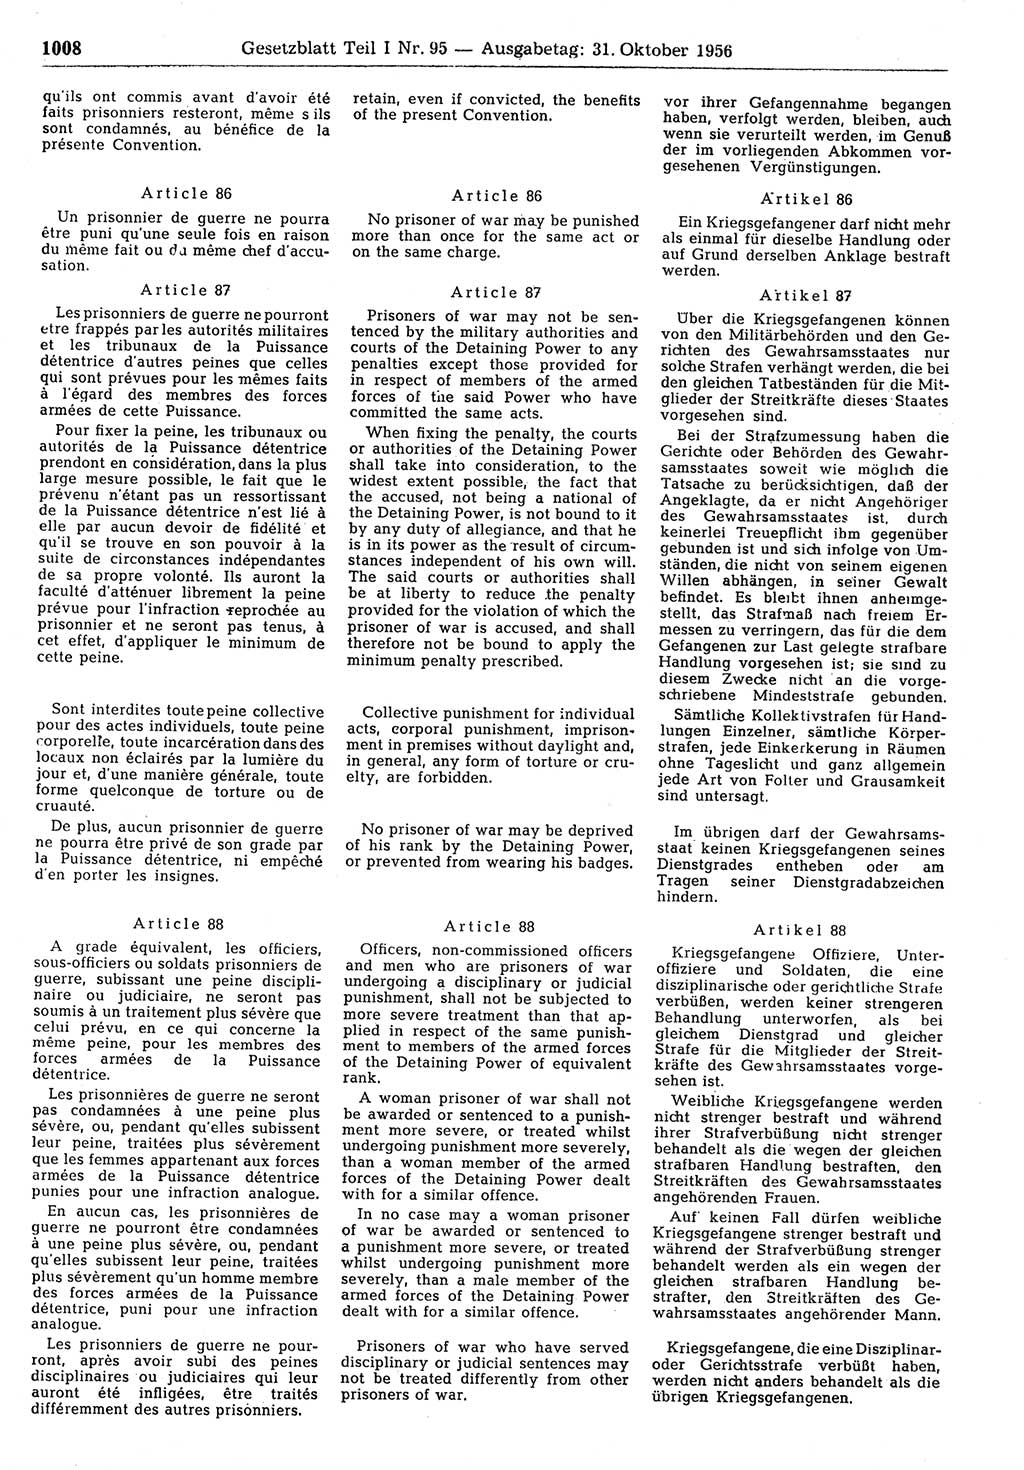 Gesetzblatt (GBl.) der Deutschen Demokratischen Republik (DDR) Teil Ⅰ 1956, Seite 1008 (GBl. DDR Ⅰ 1956, S. 1008)